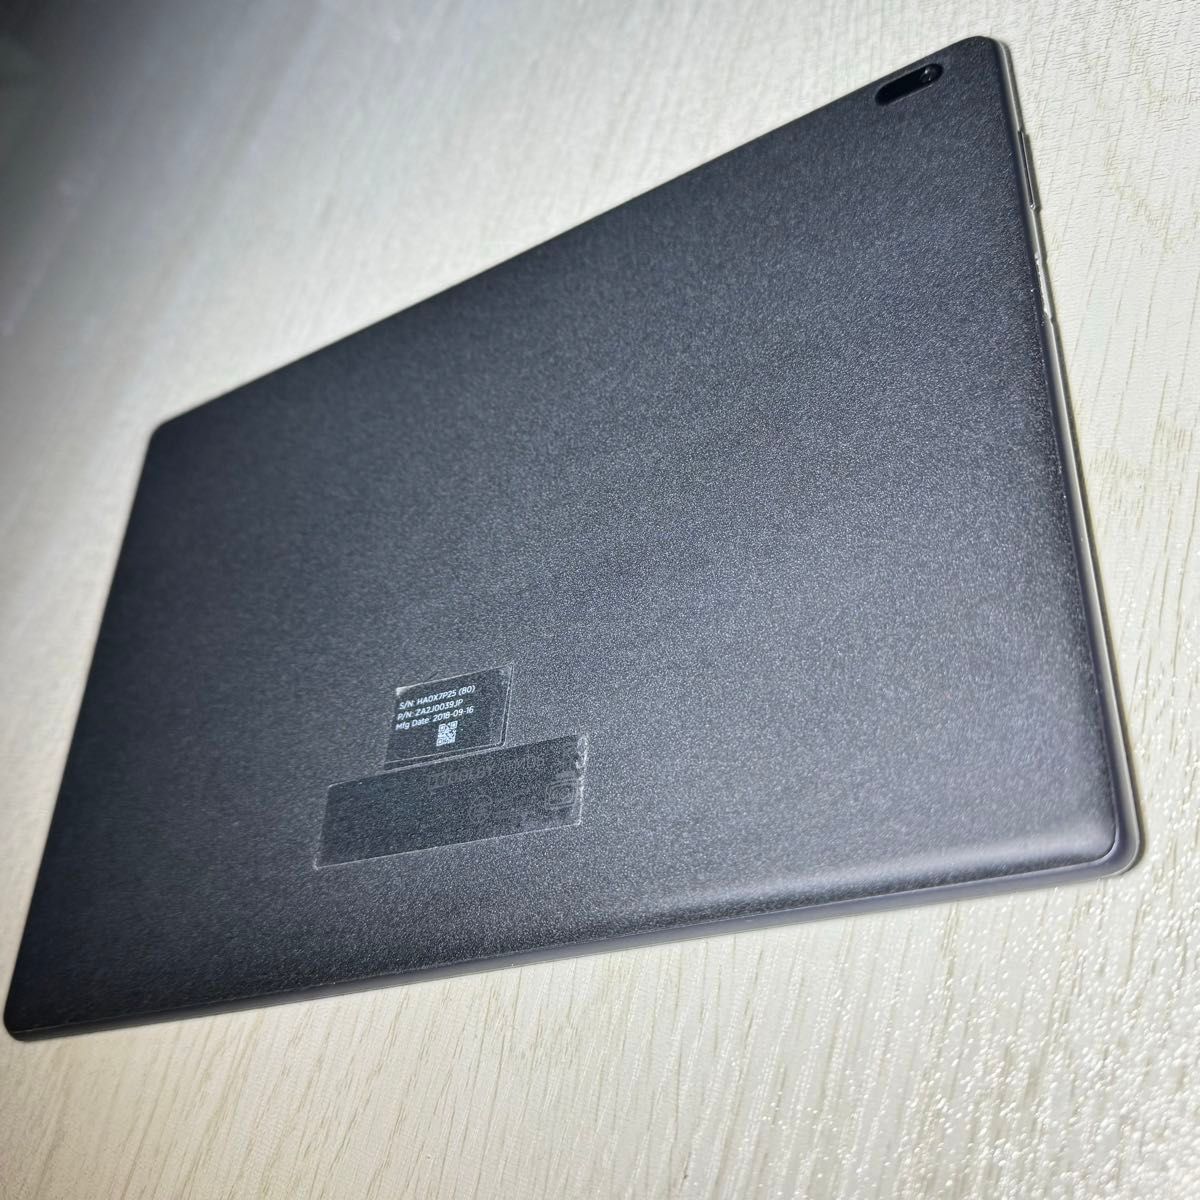 Lenovo Tab4 10 TB-X304F 2GB 16GB 10.1インチ タブレット 中古 本体 ブラック